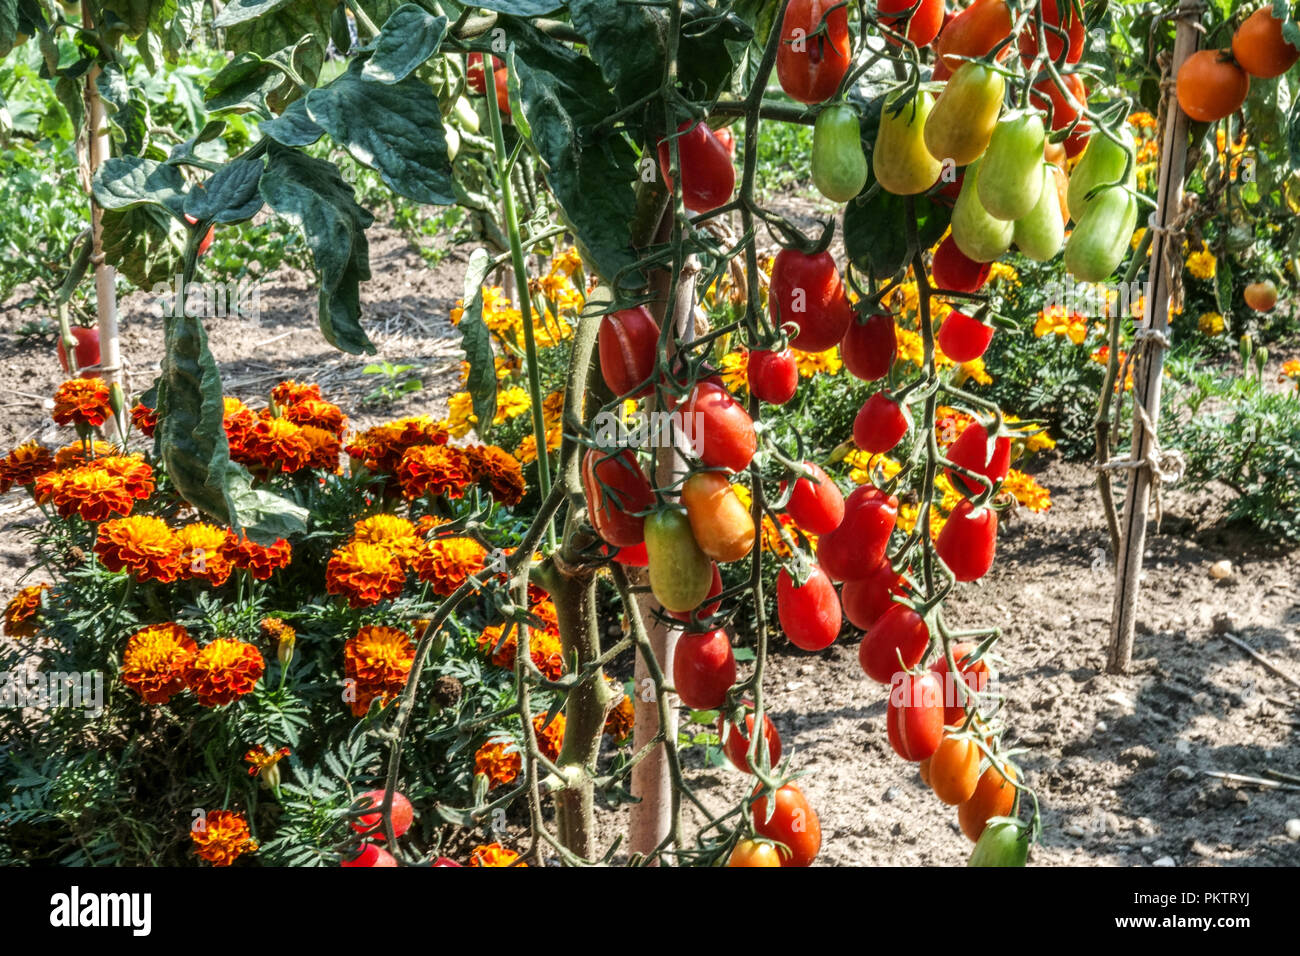 Pomodori maturi coltivati a vite, pomodori marigolenti francesi, pomodori sulla vite, tagetes erecta ortaggi Foto Stock